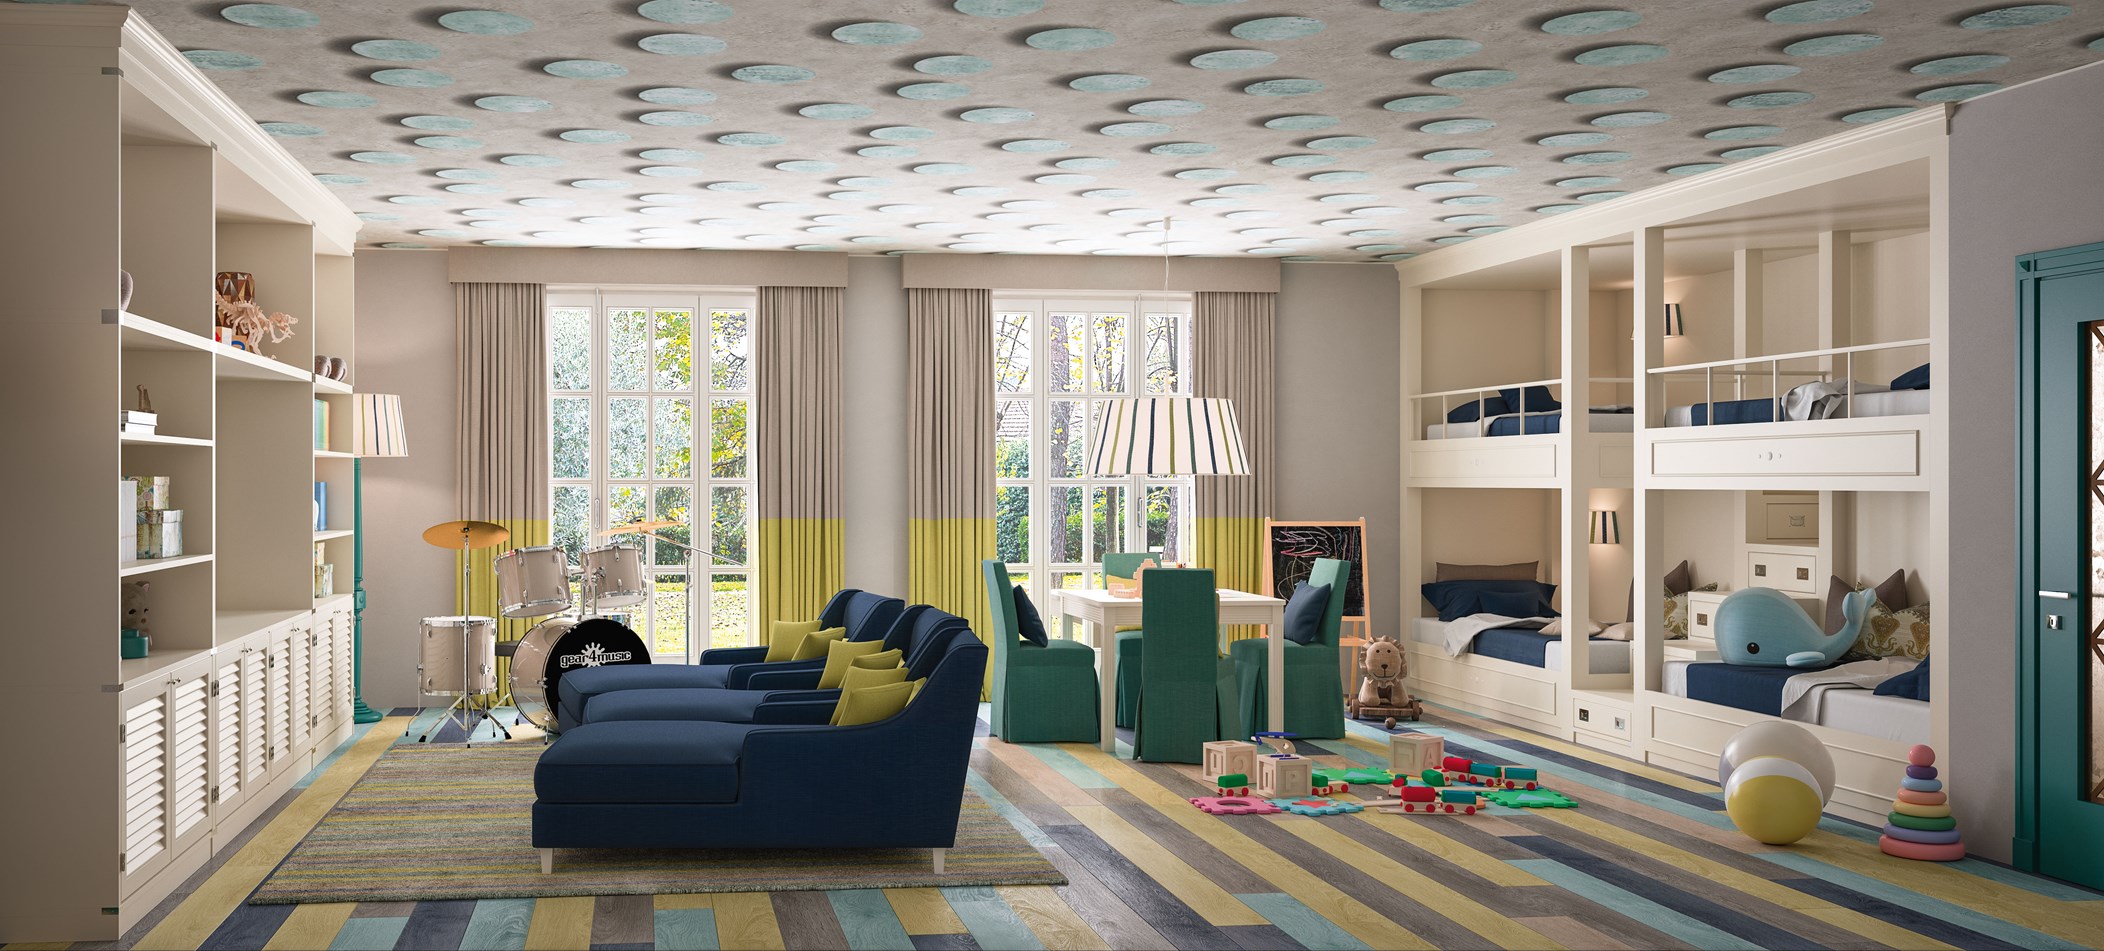 Новый взгляд на домашний мебельный интерьер от дизайнеров Caroti